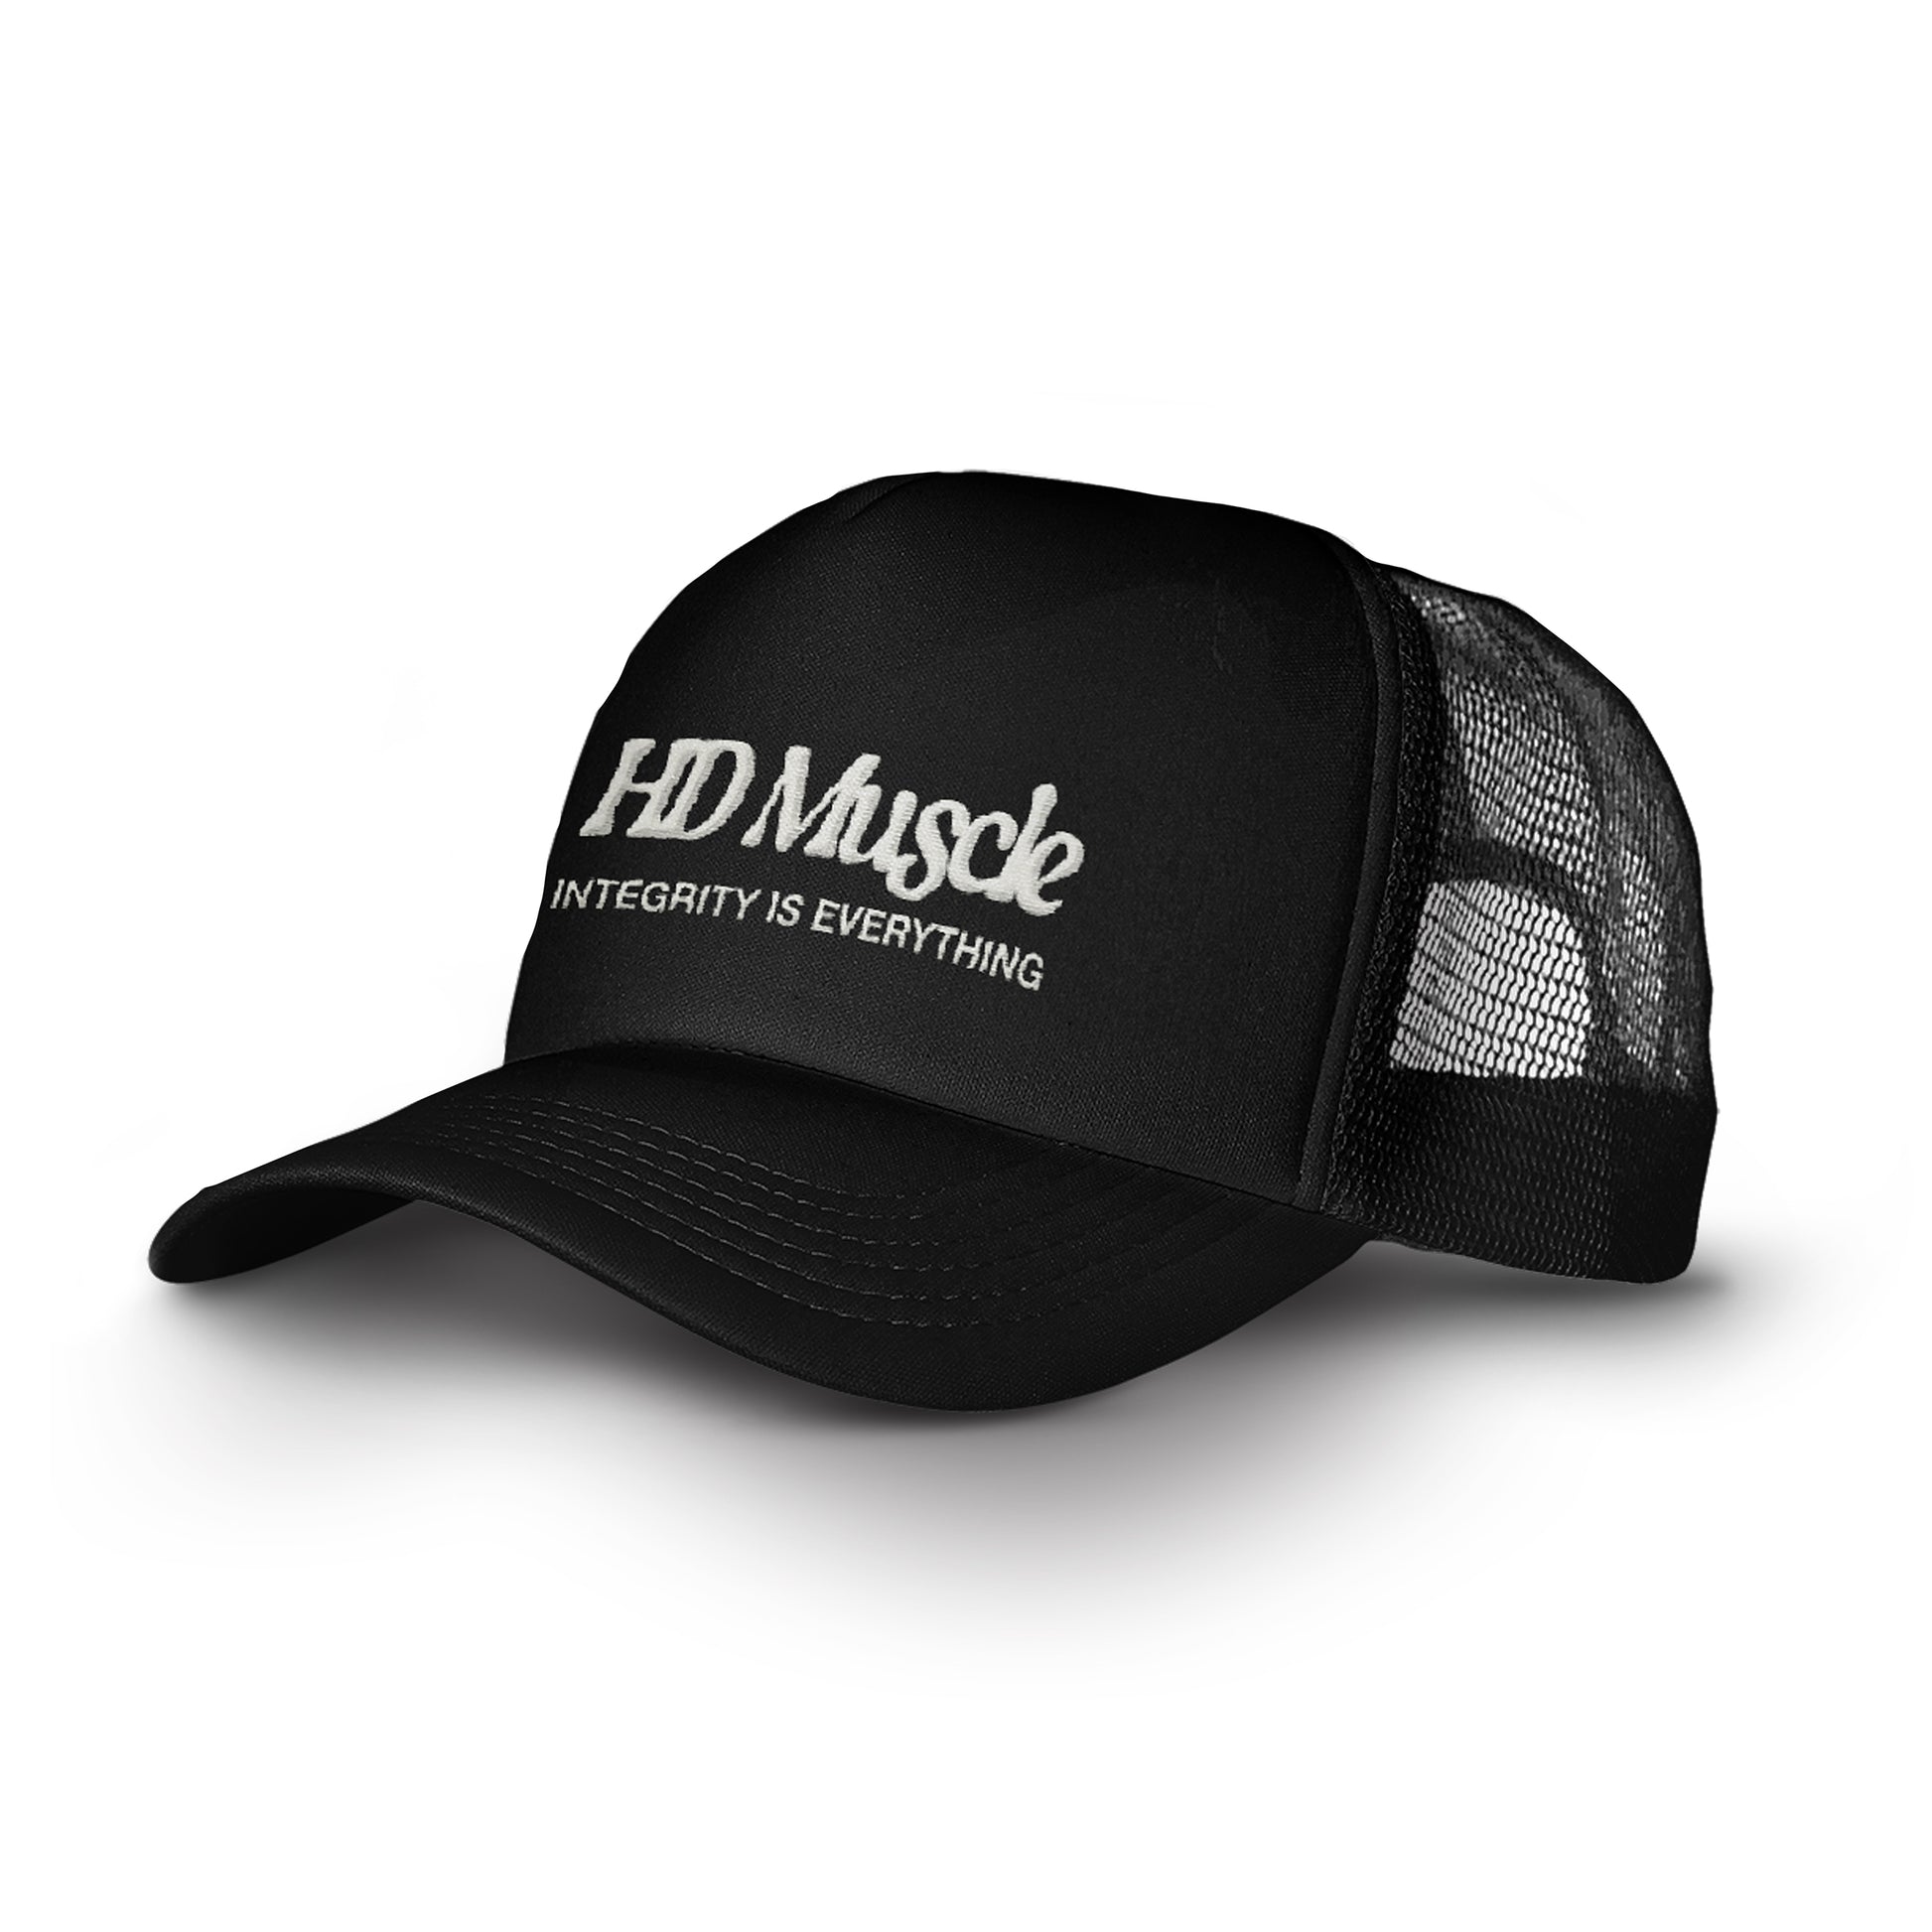 Club HD Trucker Hat — Black - HD MUSCLE